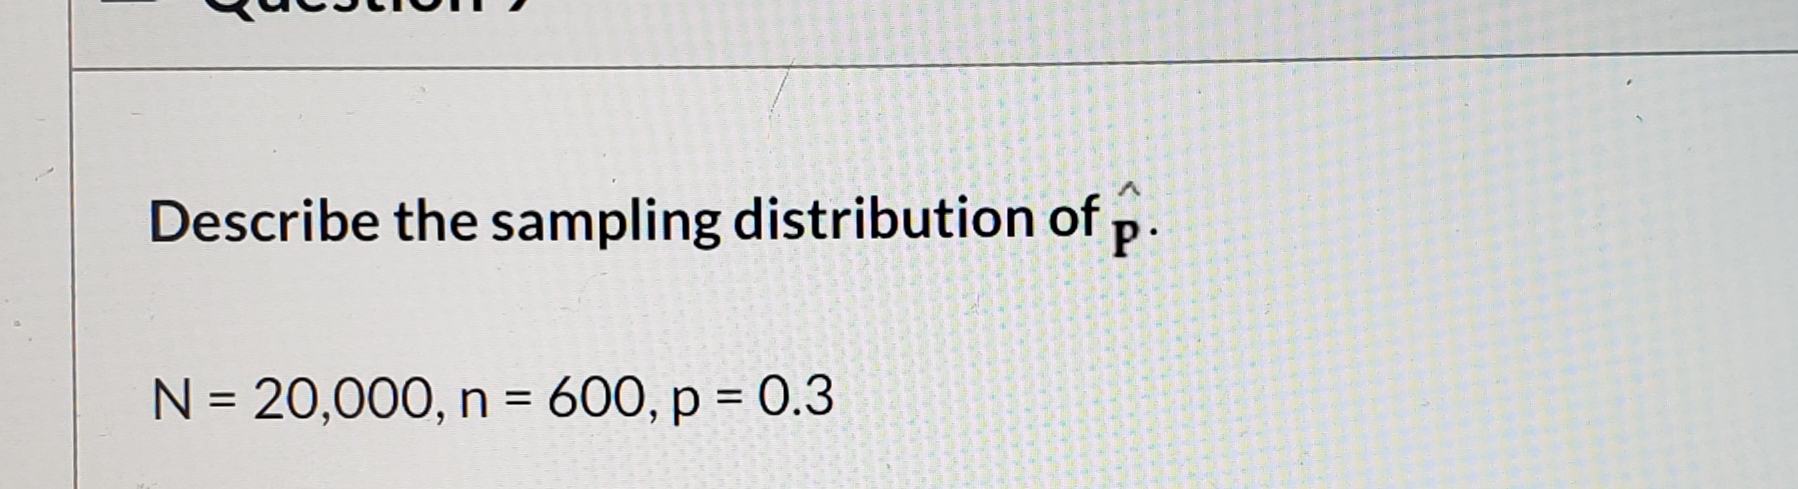 V.
Describe the sampling distribution of p.
N = 20,000, n = 600, p = 0.3
%3D
